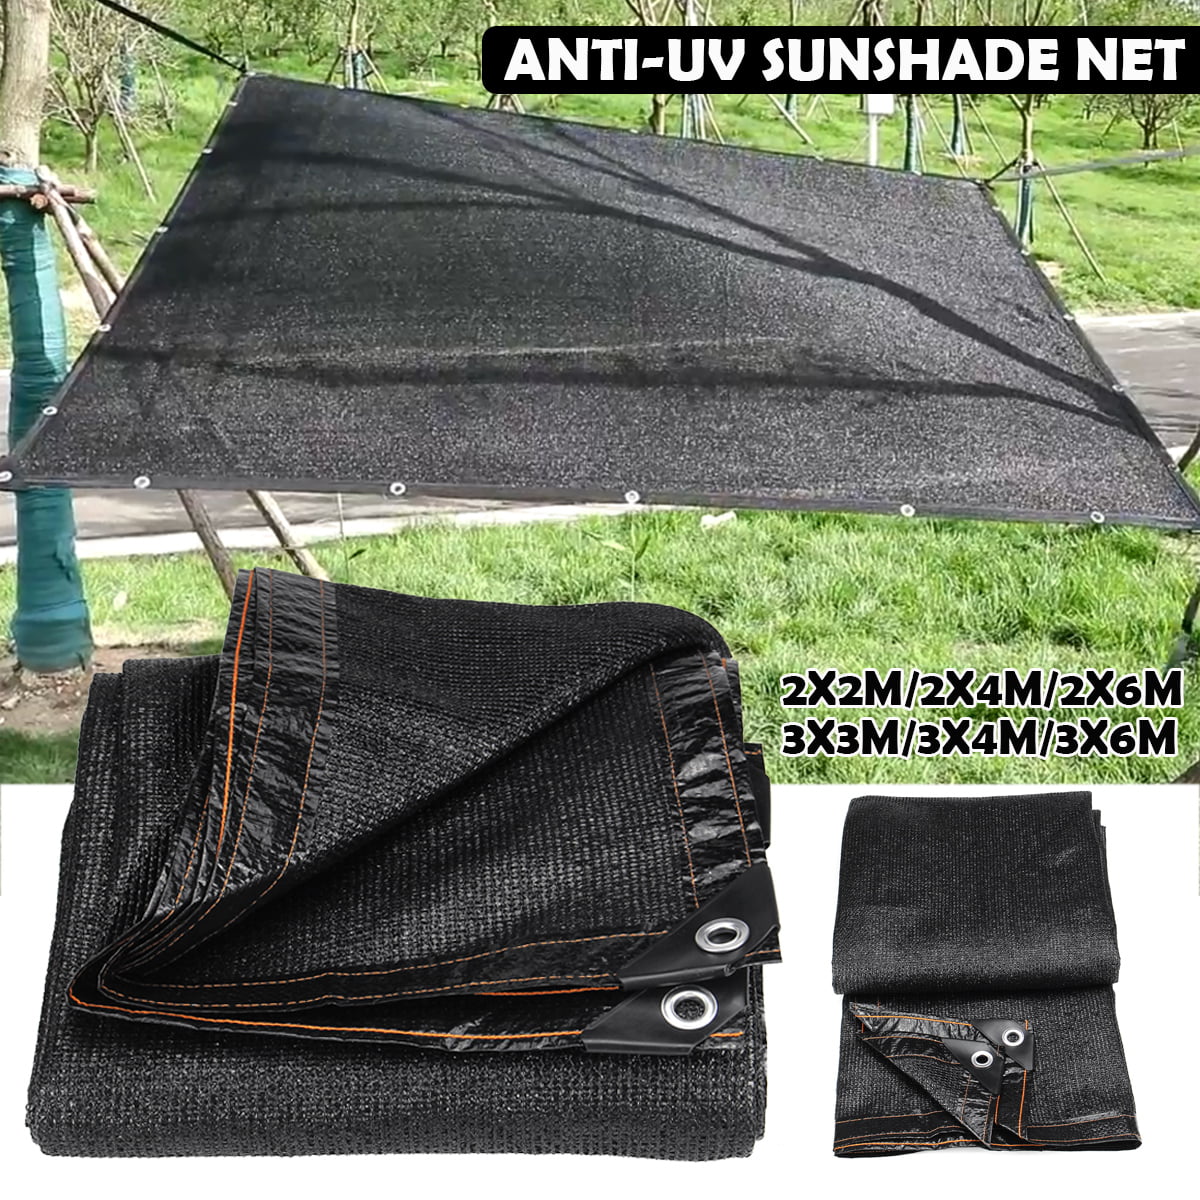 Rate Green Sunscreen Cloth Car Sunblock Anti-UV Sunshade Net Shade Cover 